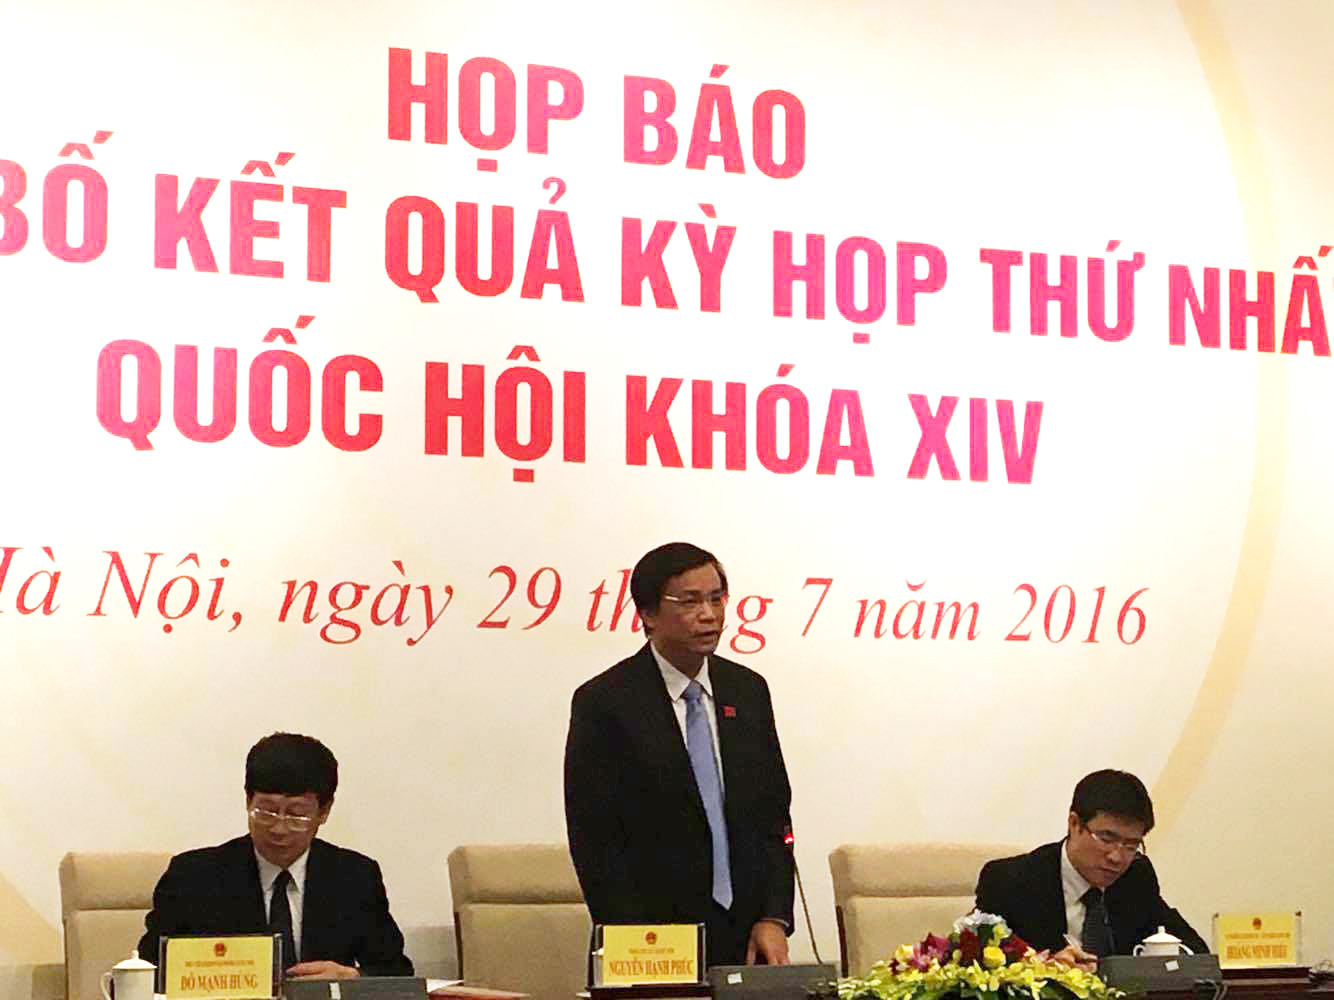 
Tổng Thư ký Quốc hội Nguyễn Hạnh Phúc trả lời báo chí tại buổi họp báo - Ảnh: Văn Duẩn
